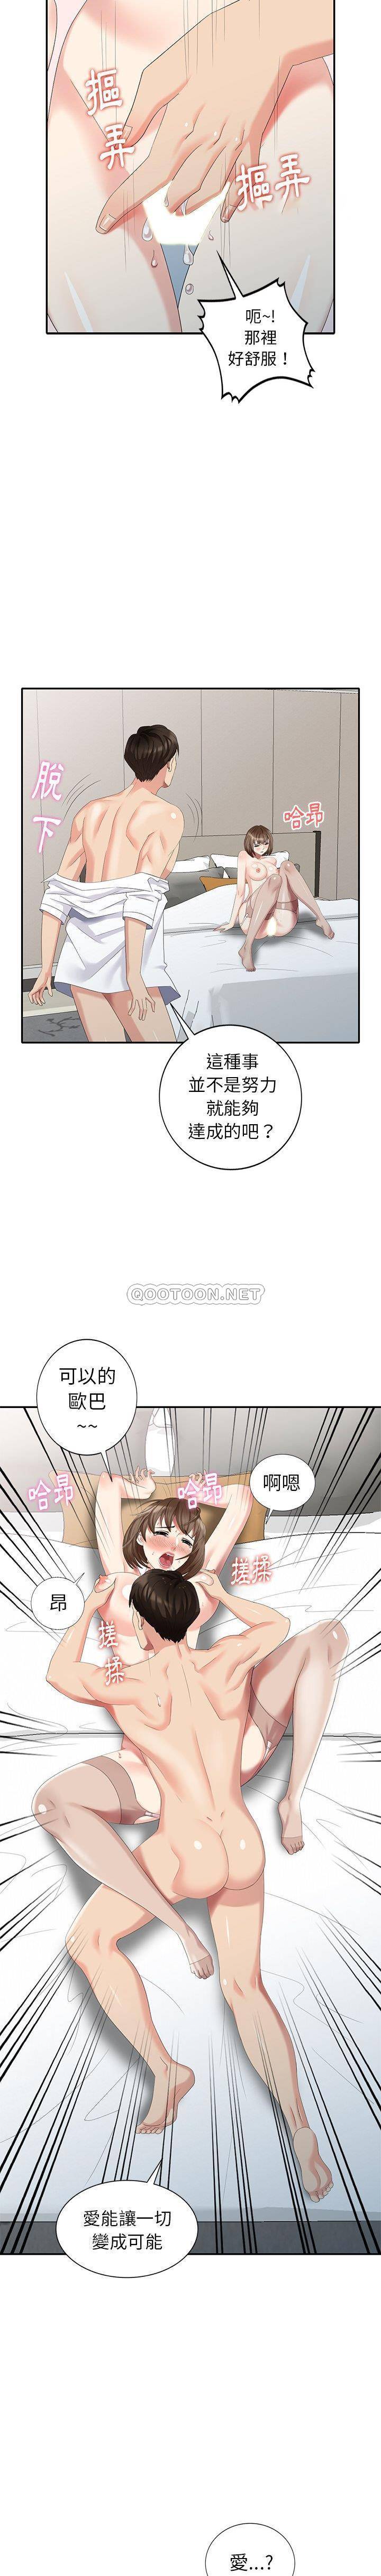 韩国污漫画 天降夢中人 第29话 15